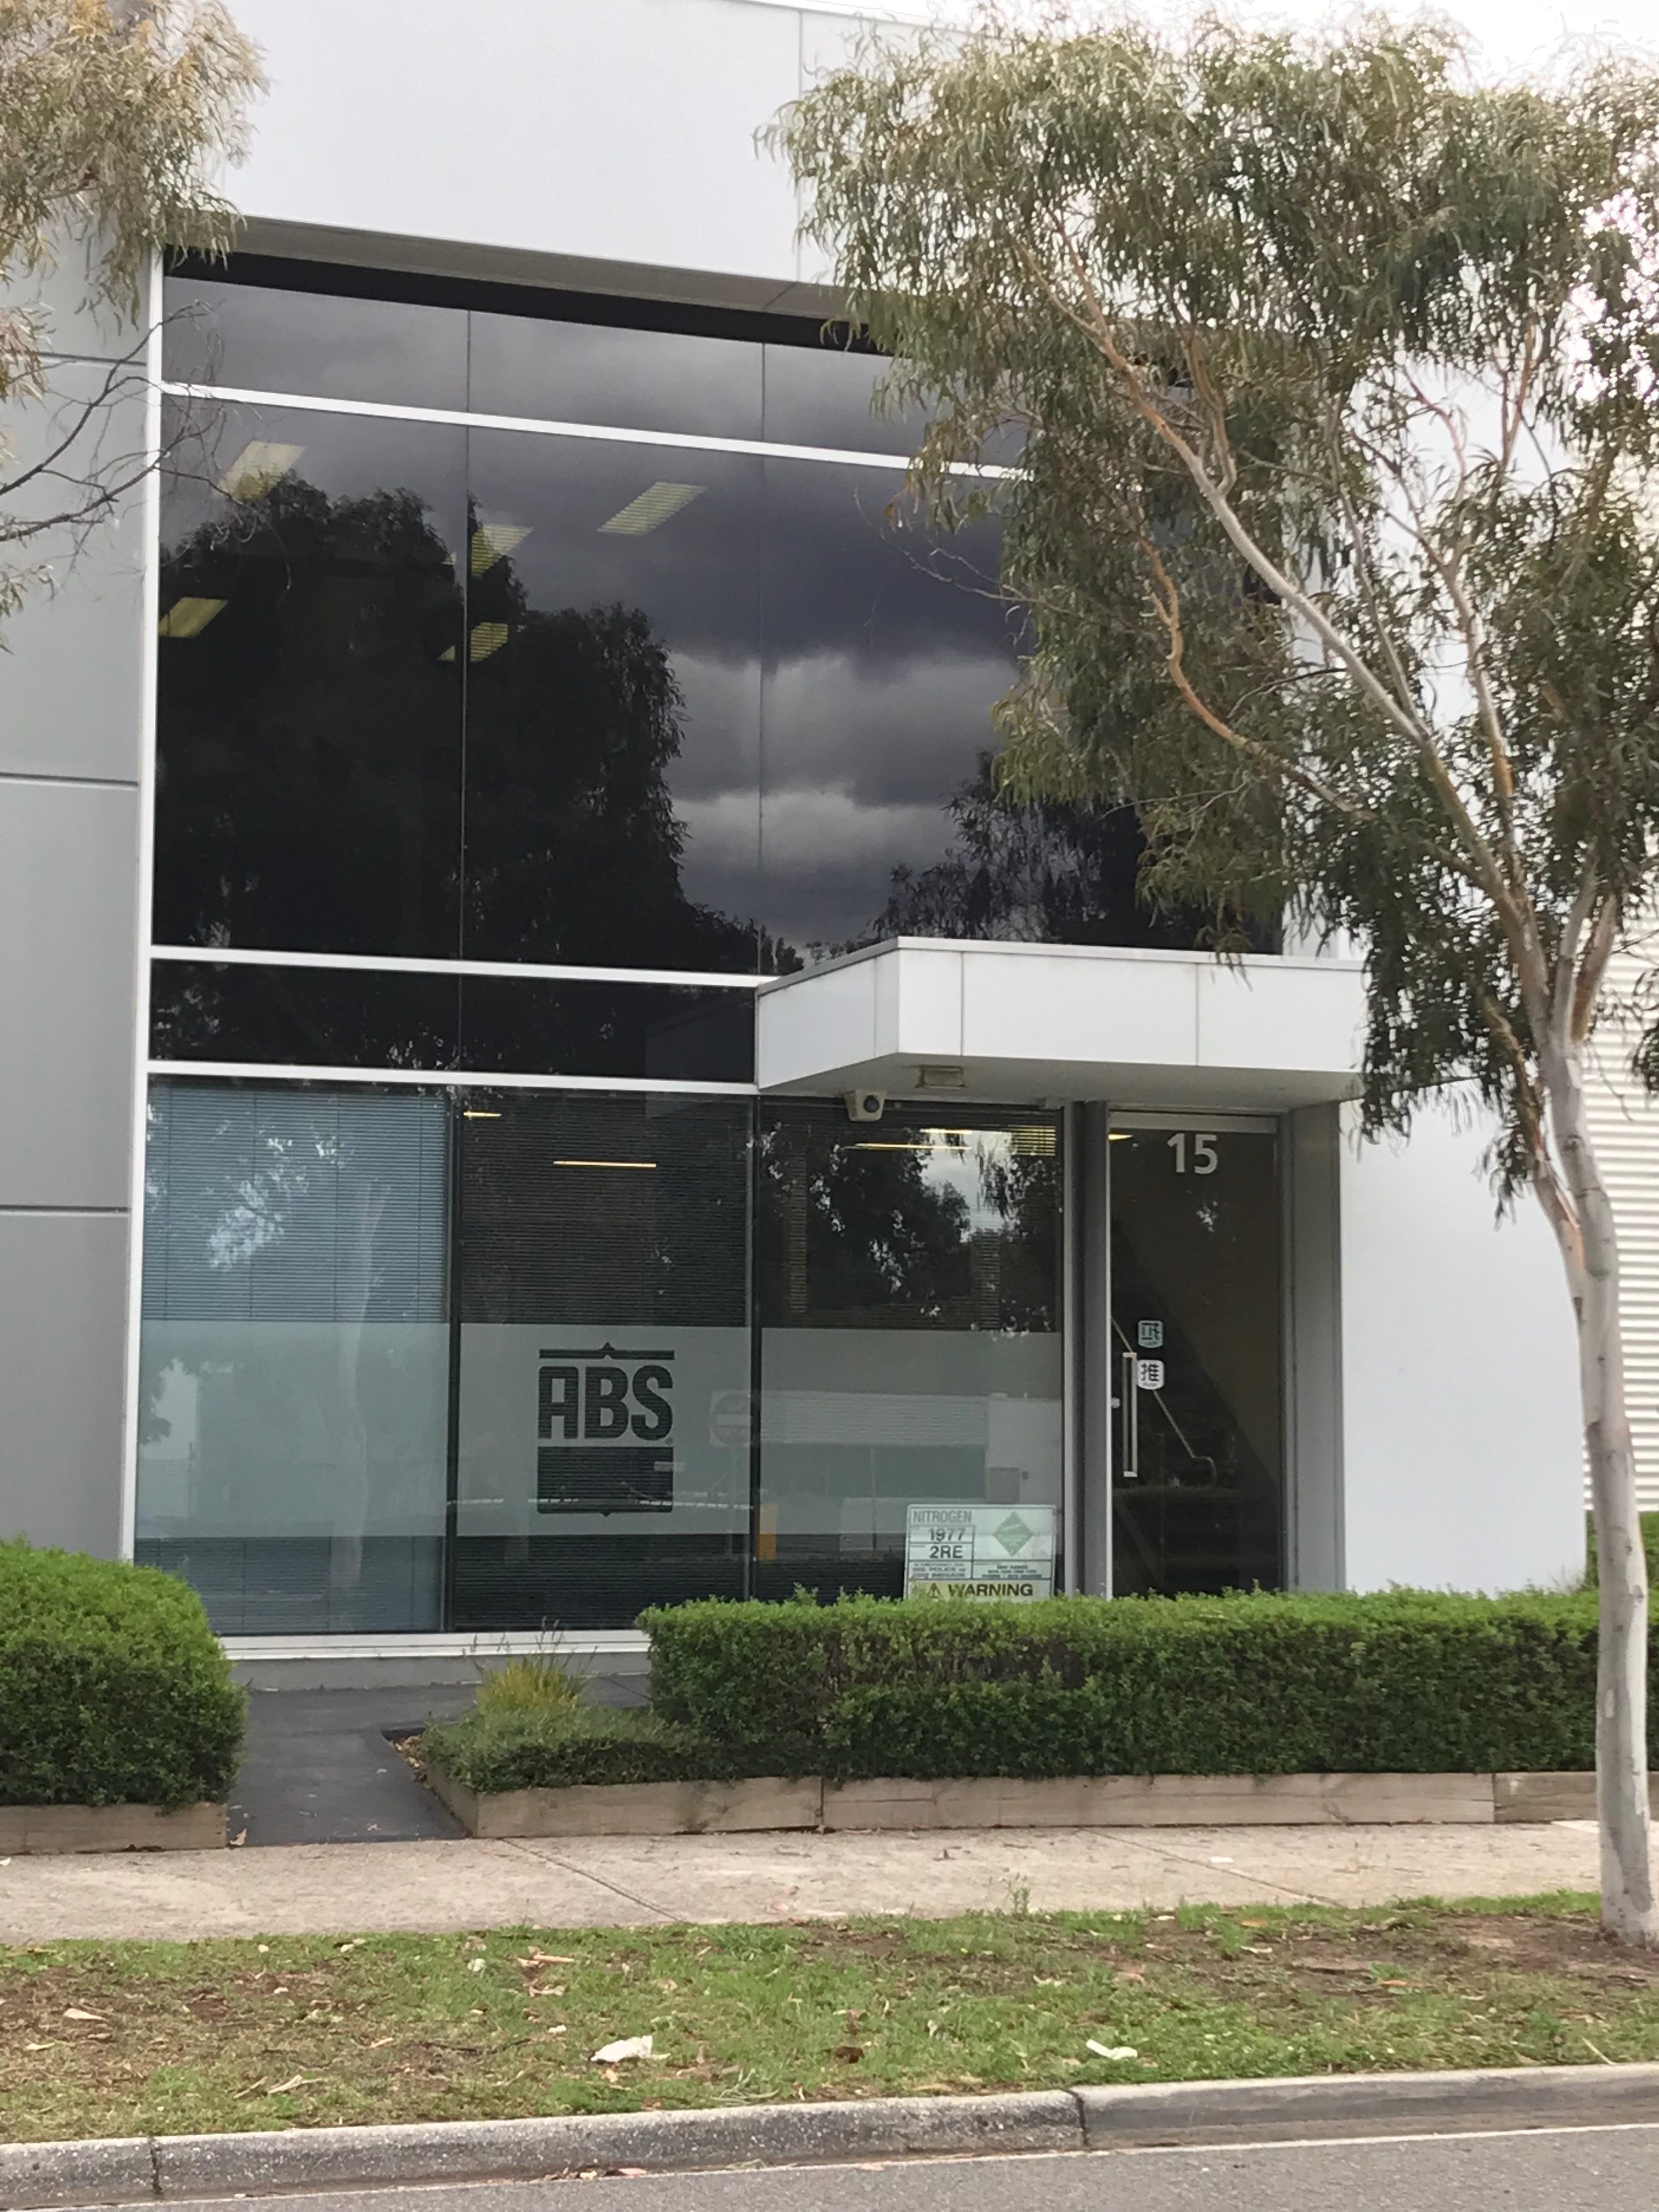 ABS Australia's head office in Bundoora